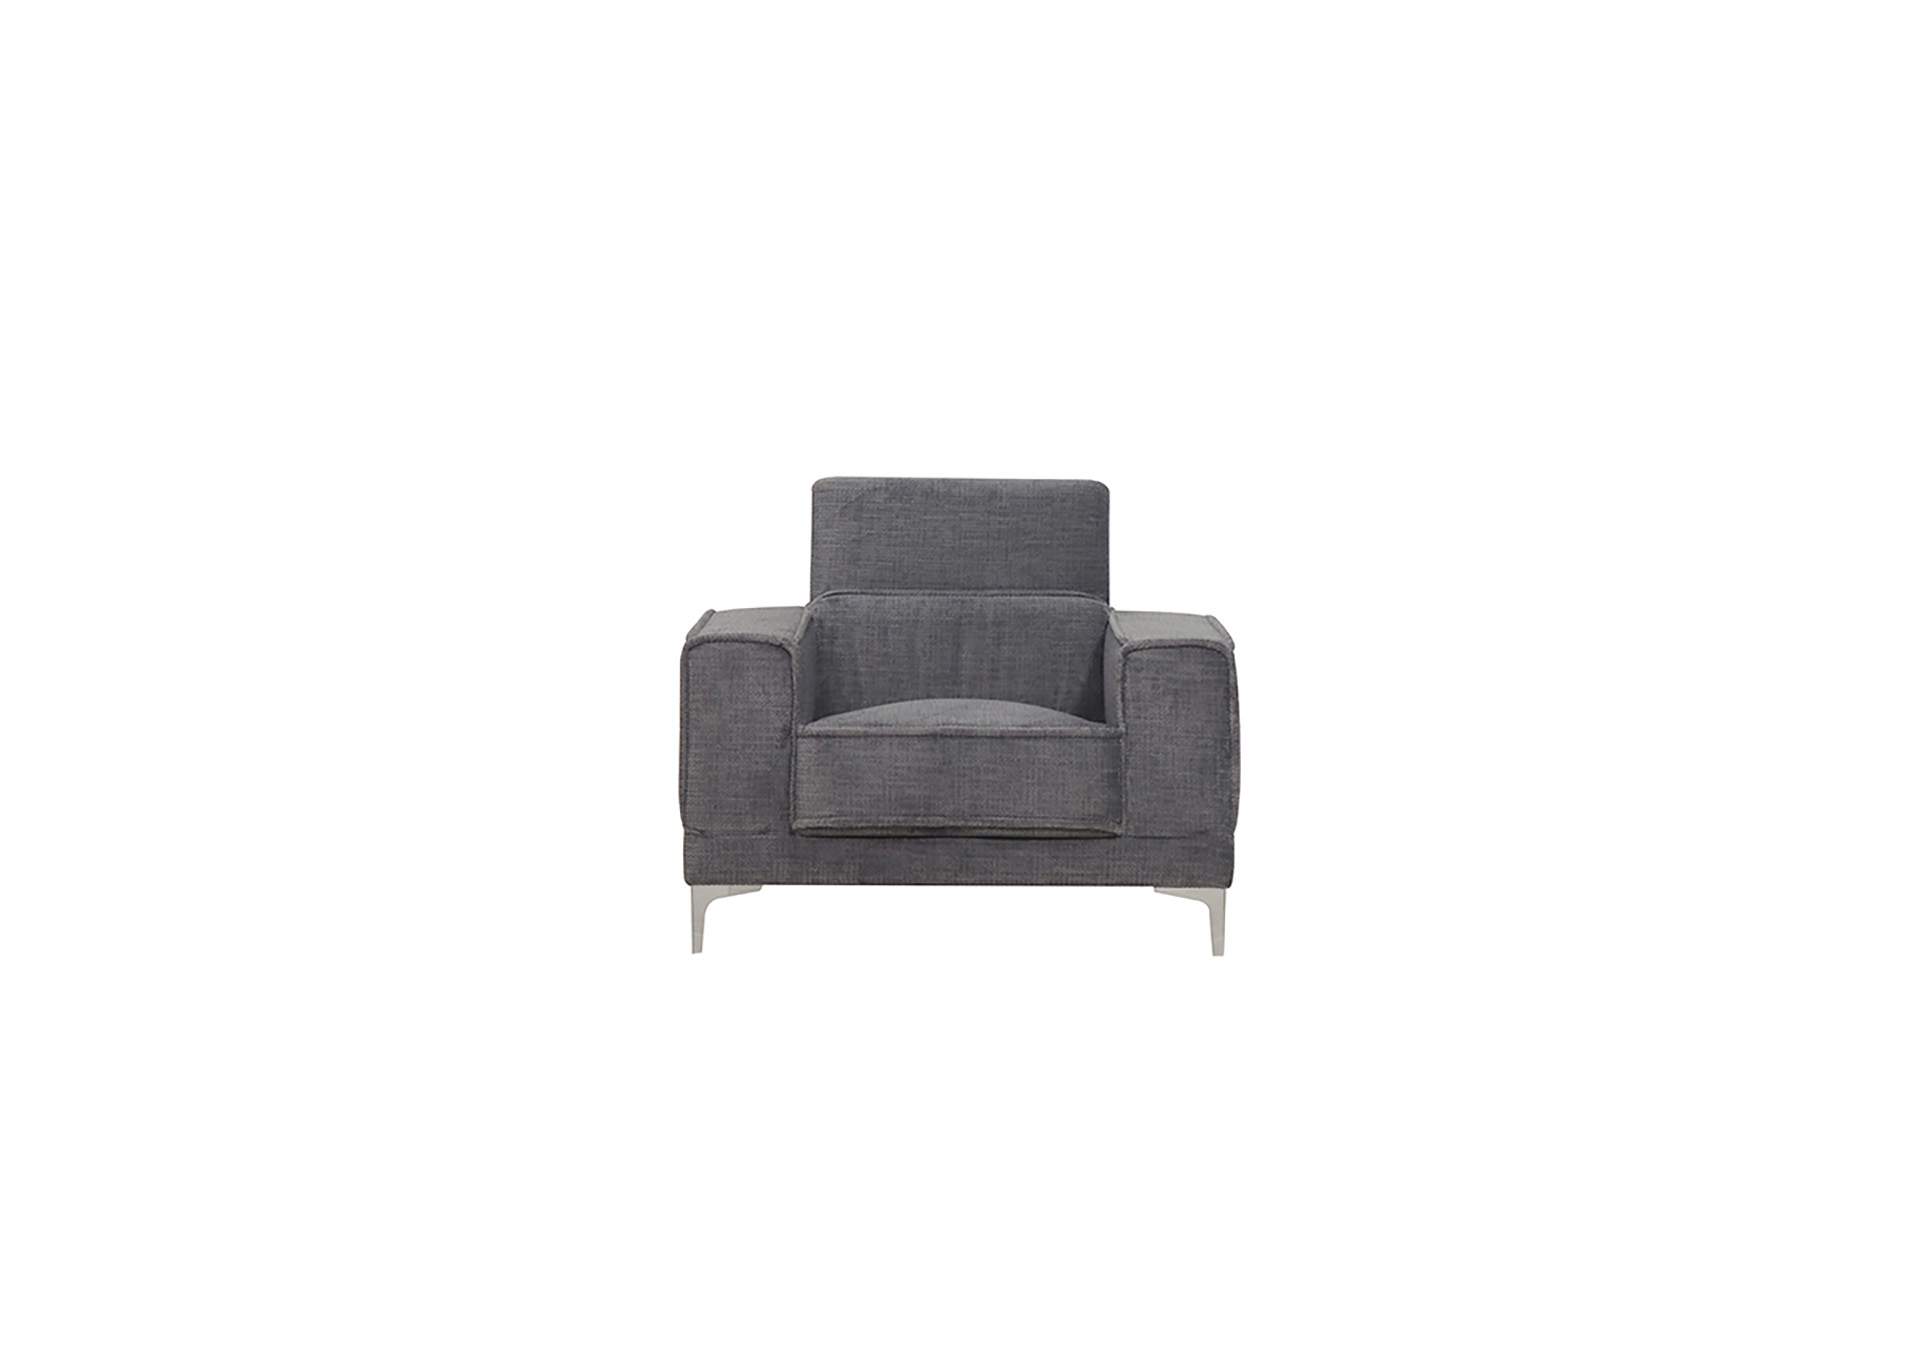 Bear White Platinum Chair,Global Furniture USA